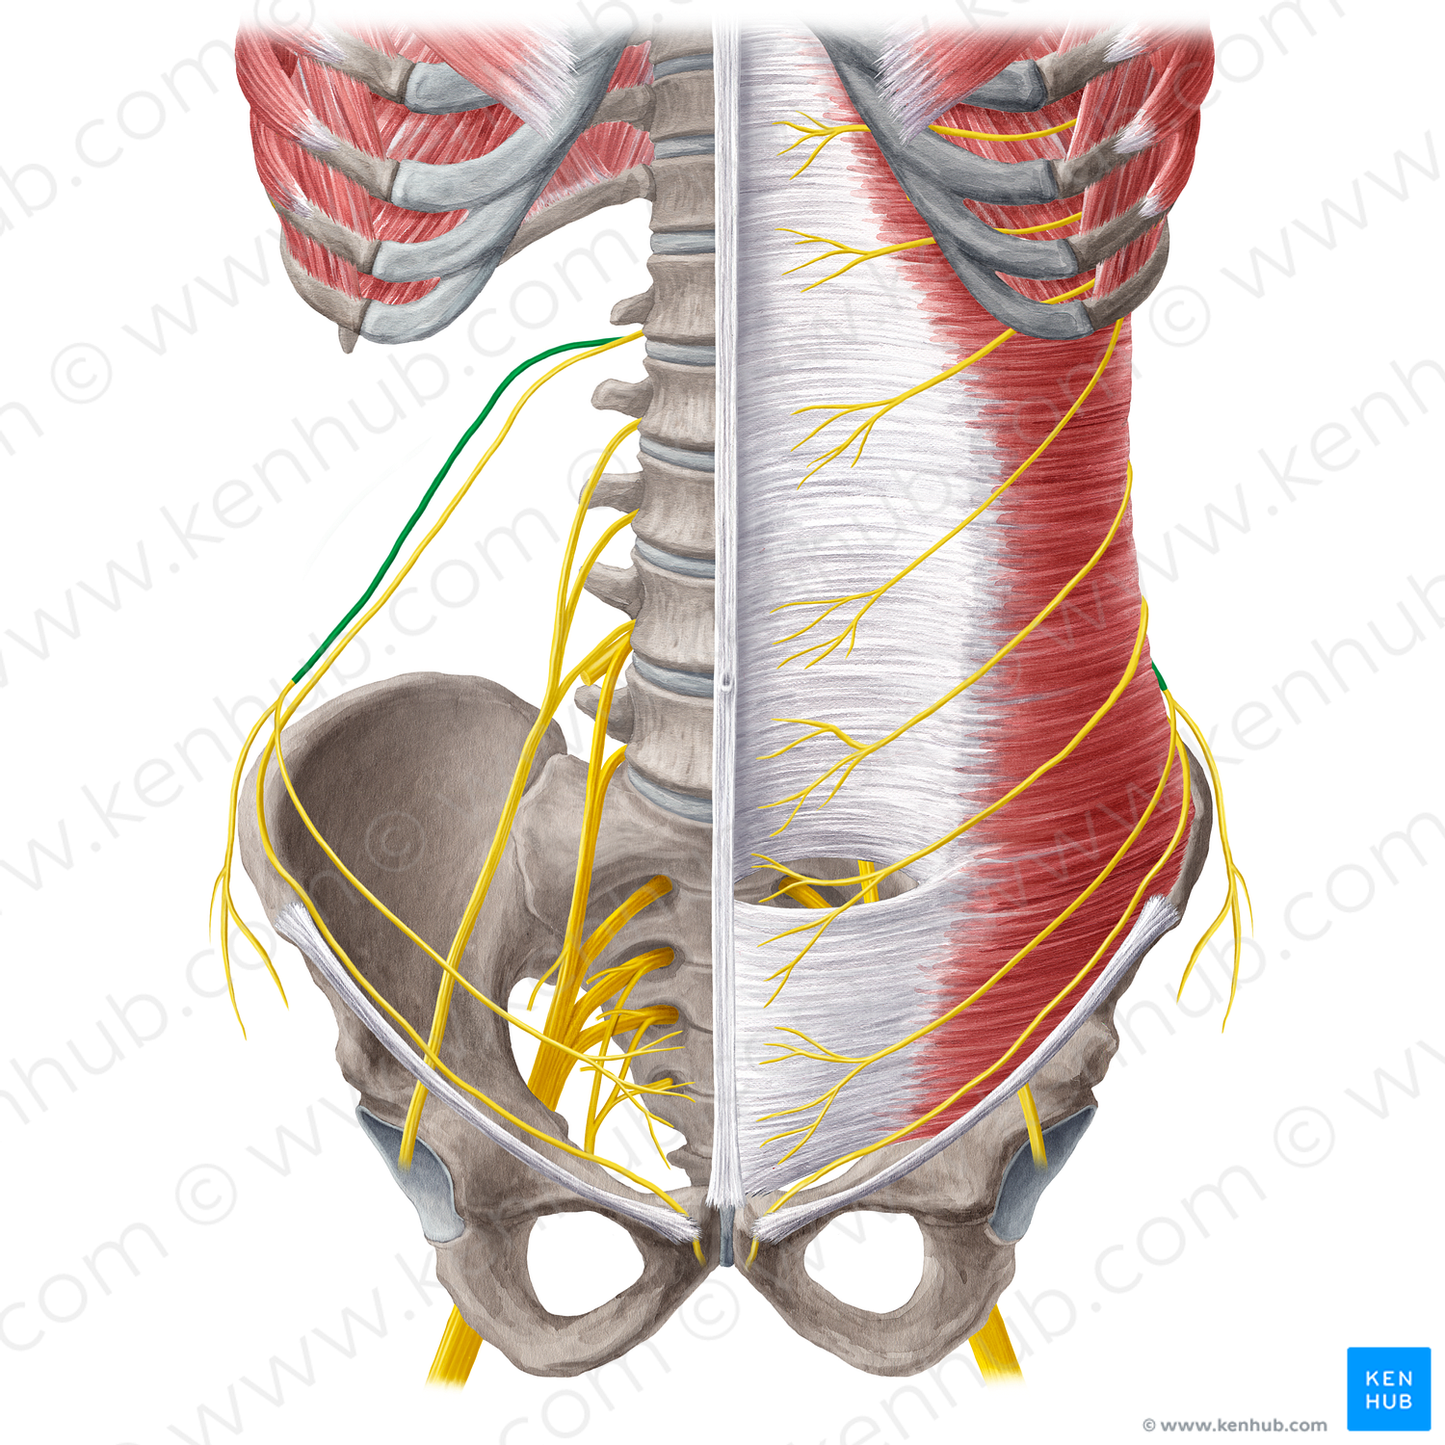 Iliohypogastric nerve (#6473)